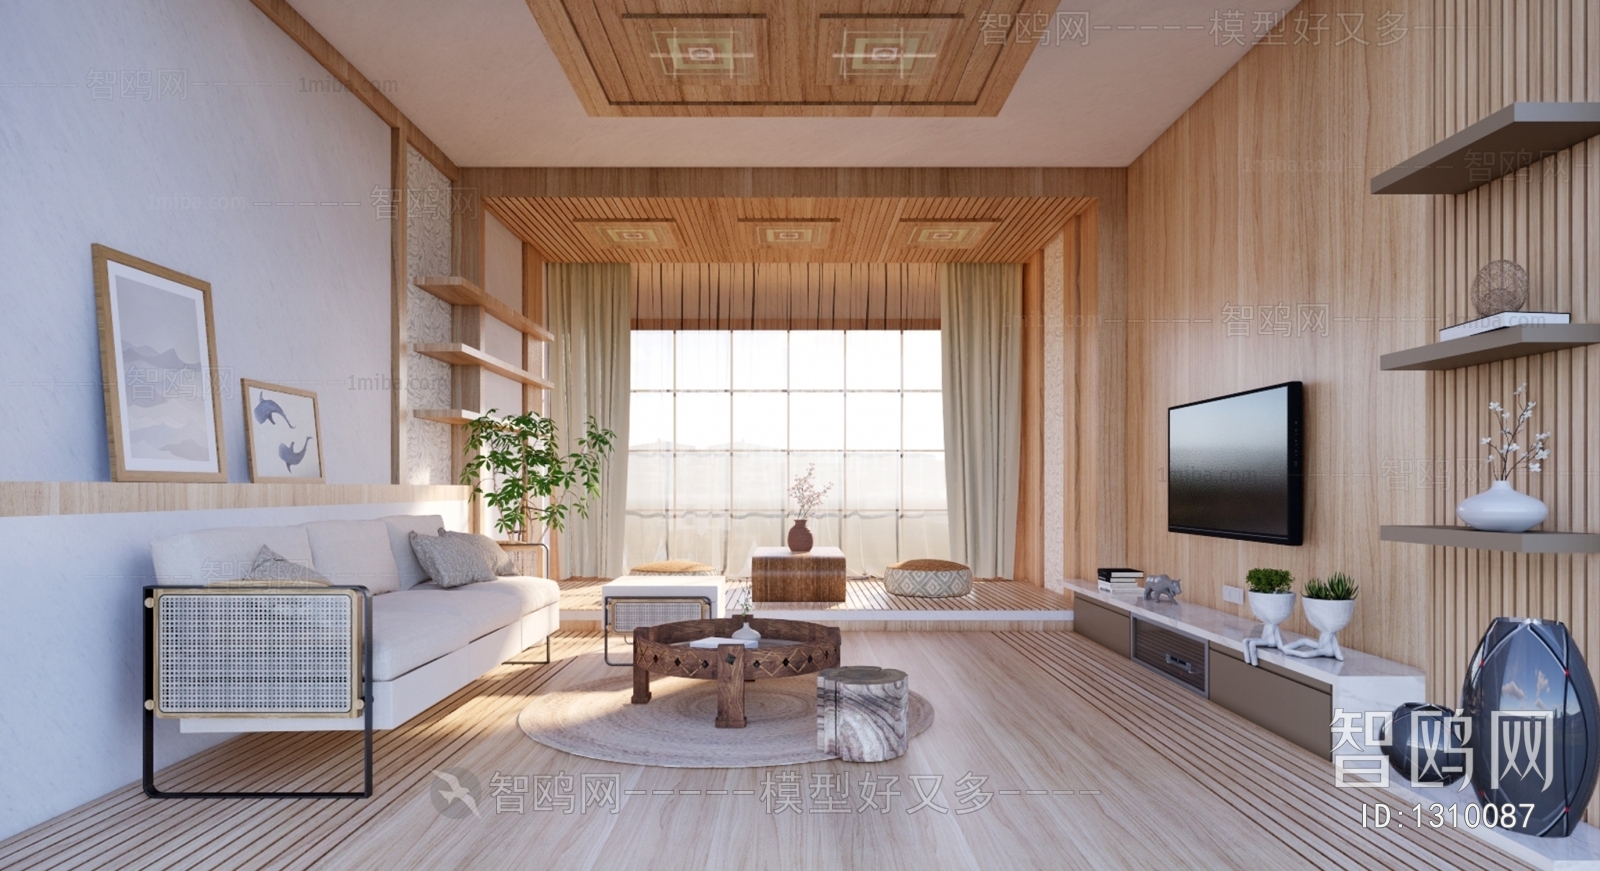 日式家居客厅 日式家具沙发茶几 日式软装摆件